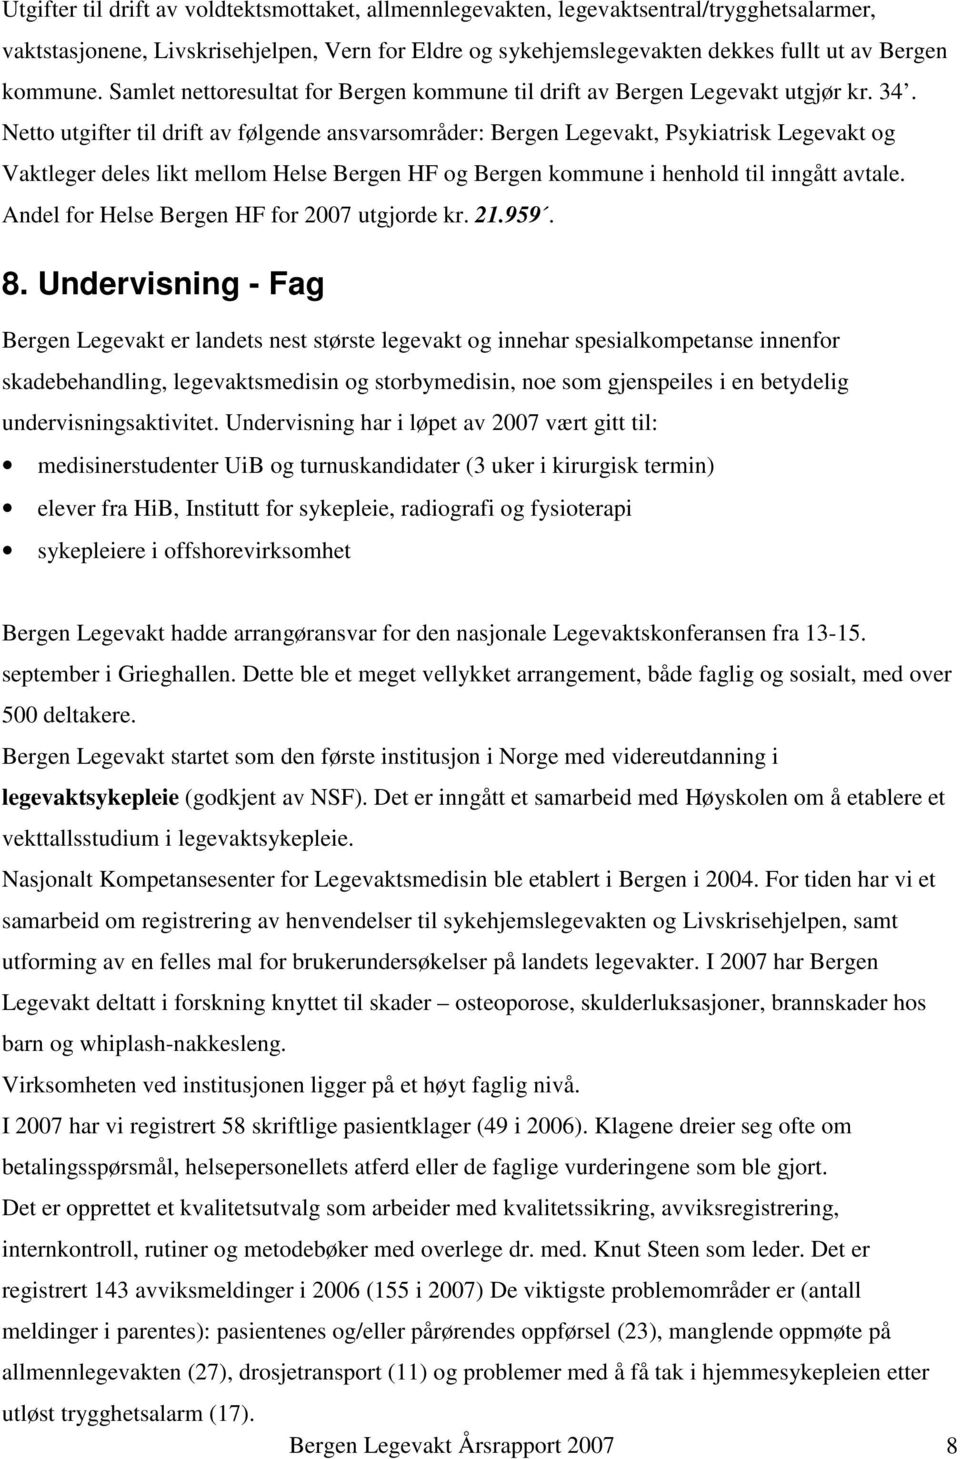 Netto utgifter til drift av følgende ansvarsområder: Bergen Legevakt, Psykiatrisk Legevakt og Vaktleger deles likt mellom Helse Bergen HF og Bergen kommune i henhold til inngått avtale.